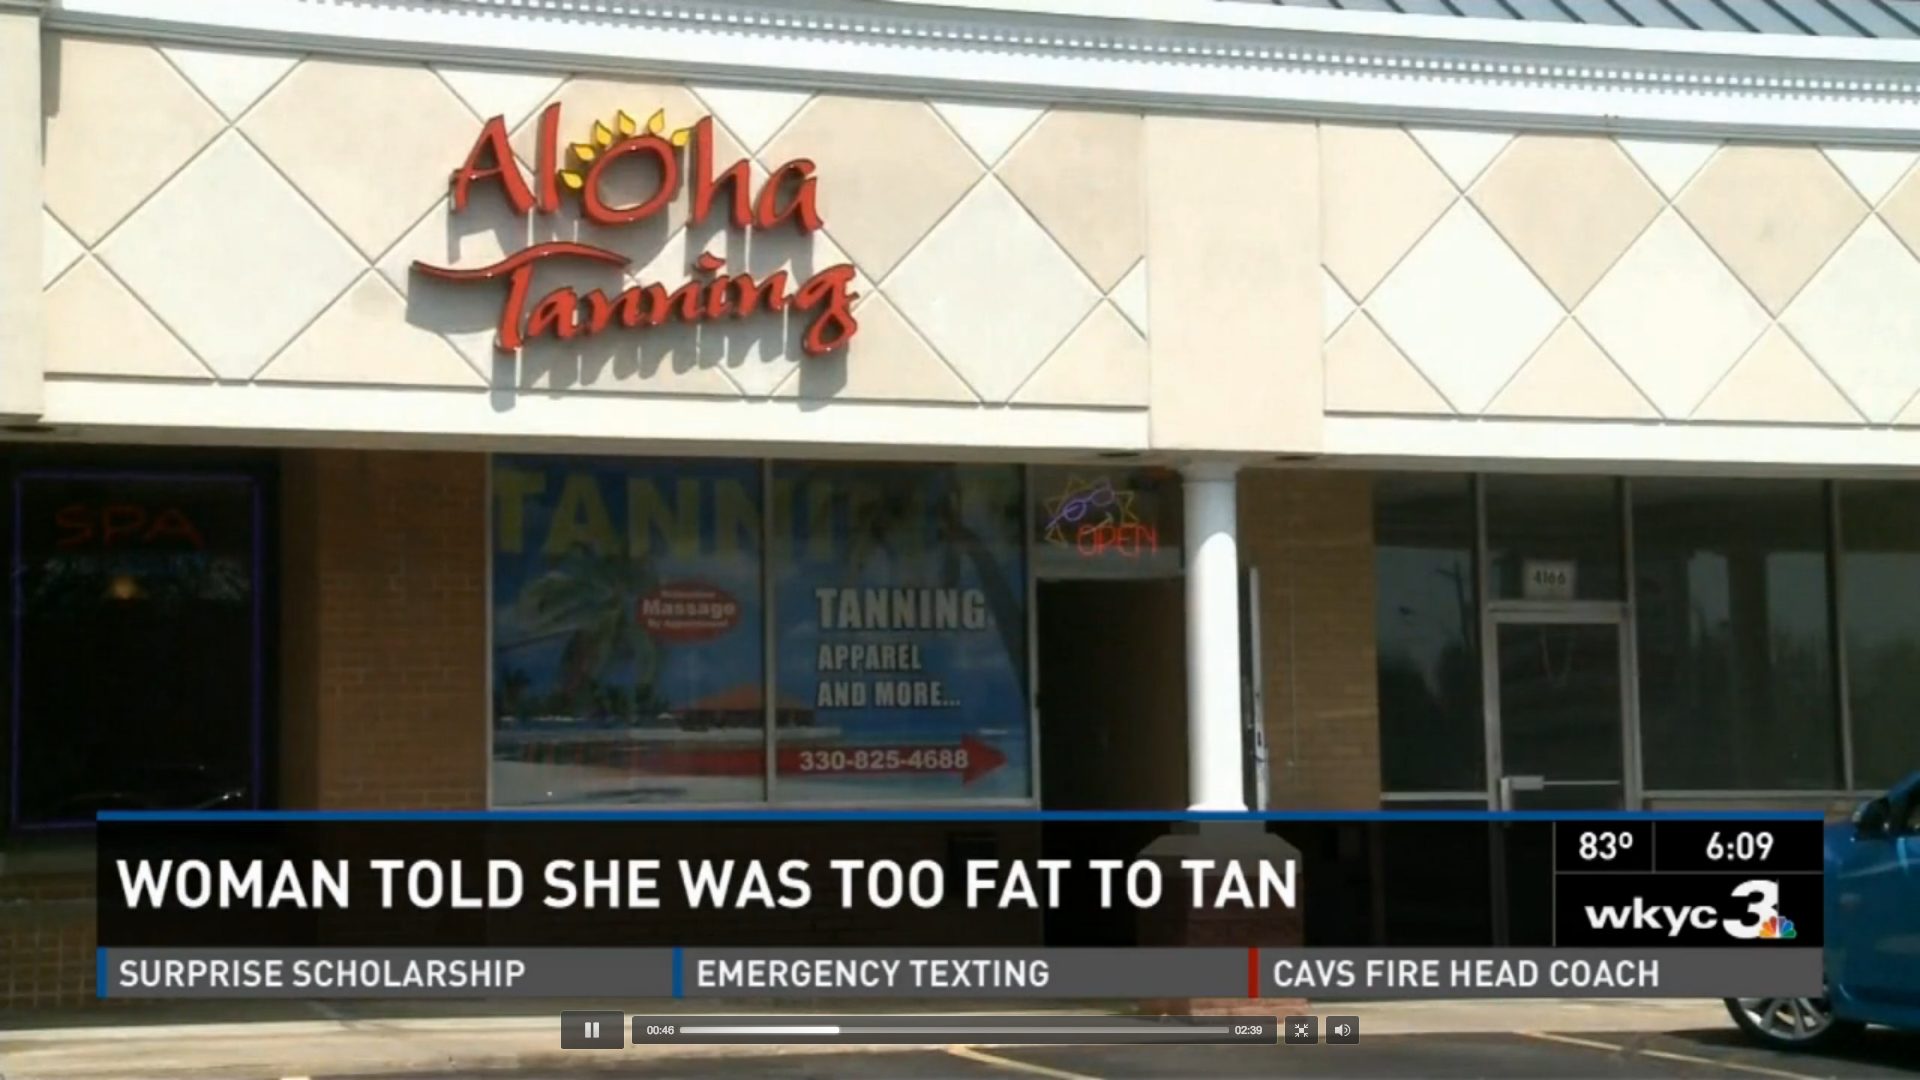 Aloha Tanning nekade också McGrevey en återbetalning för det månadskort hon köpt.